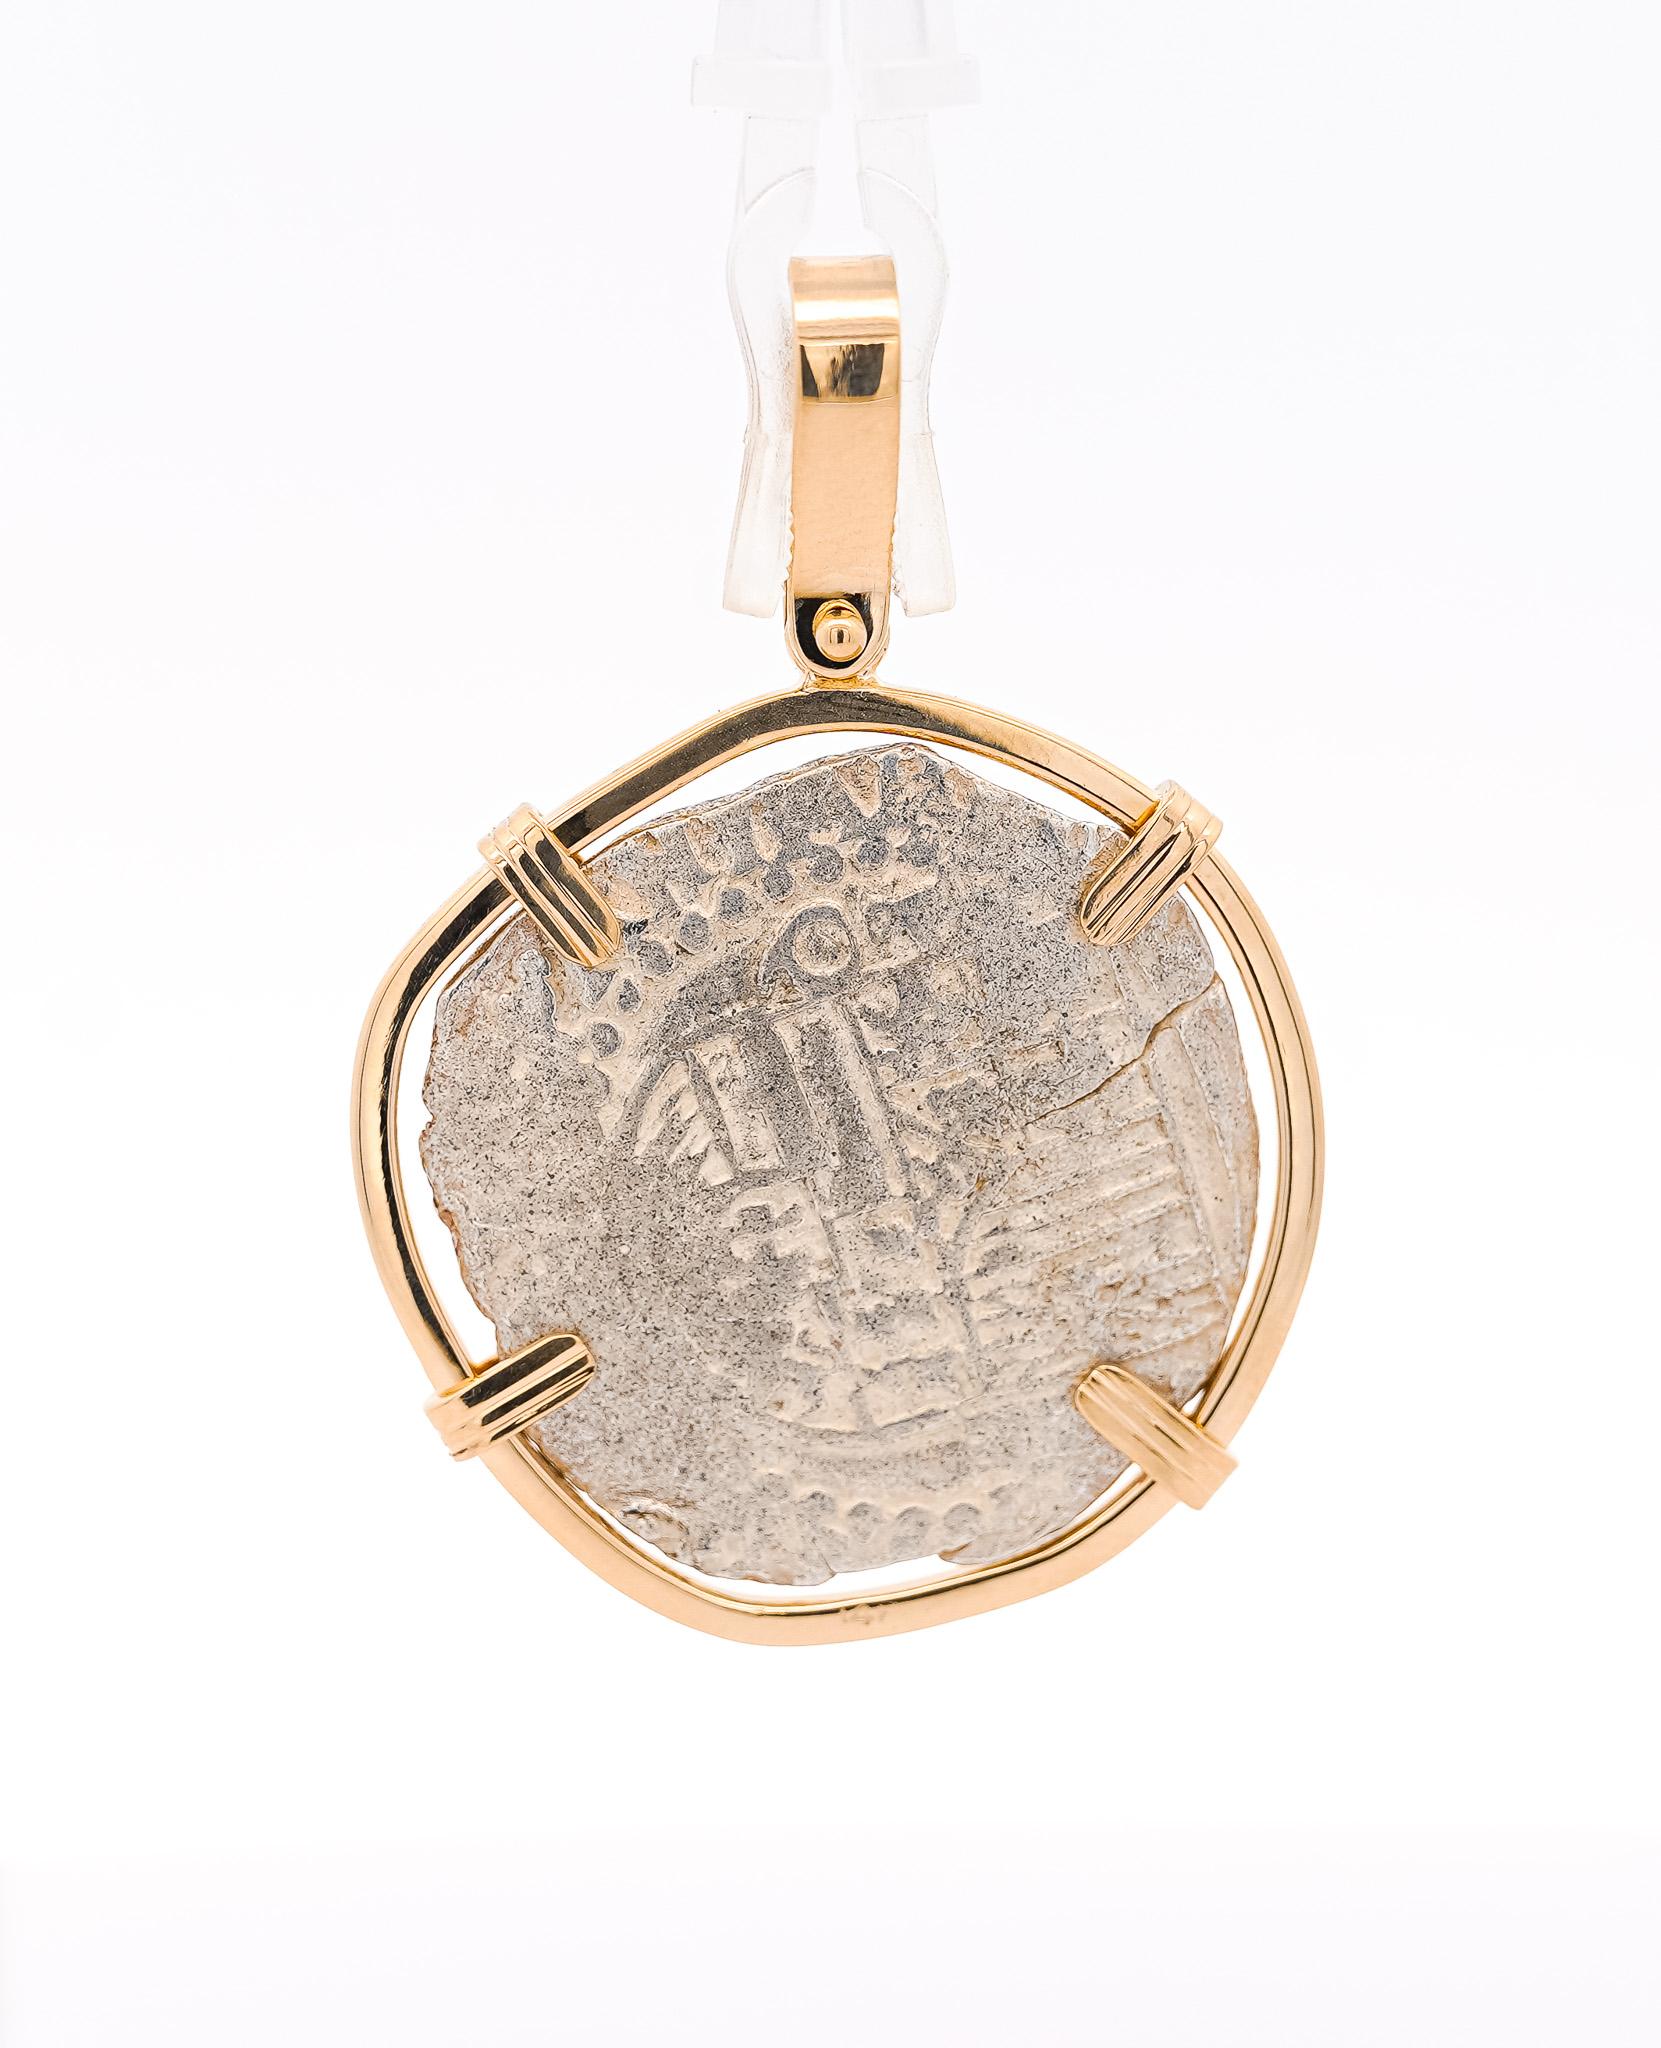 Original Atocha Shipwreck coin grade 2 Potosi mint 4 Reale Assayer 